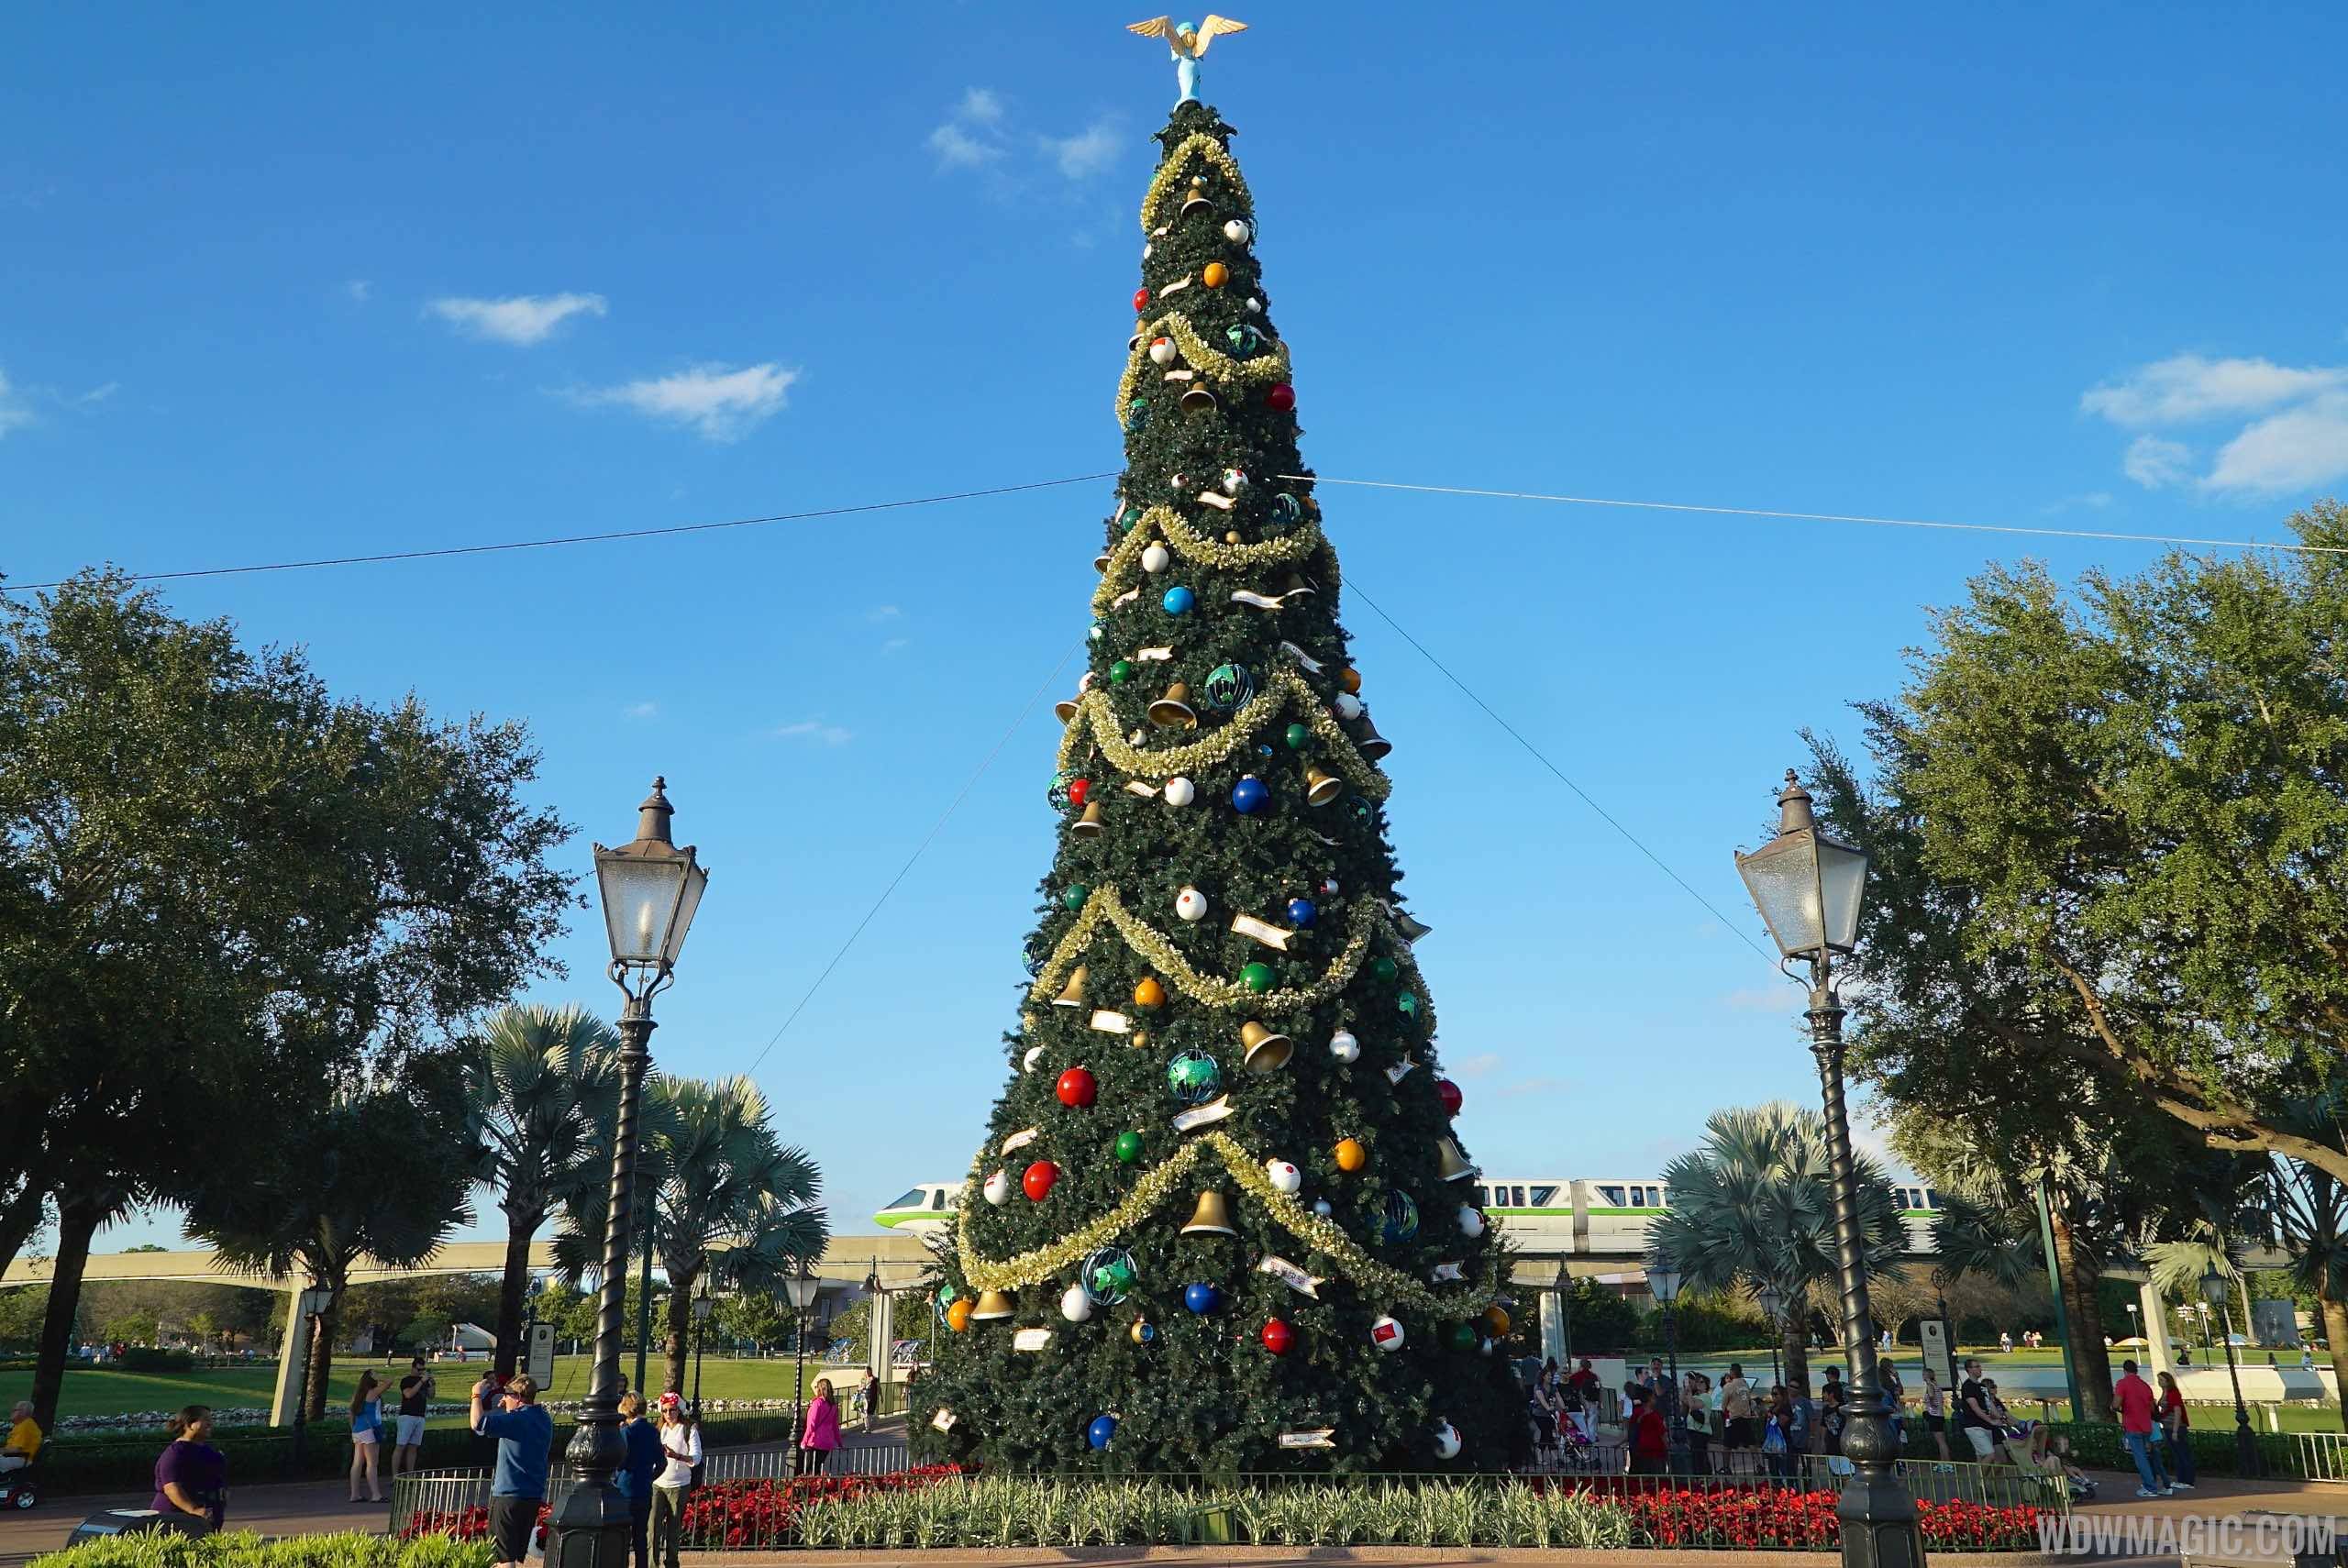 Epcot's Christmas Tree